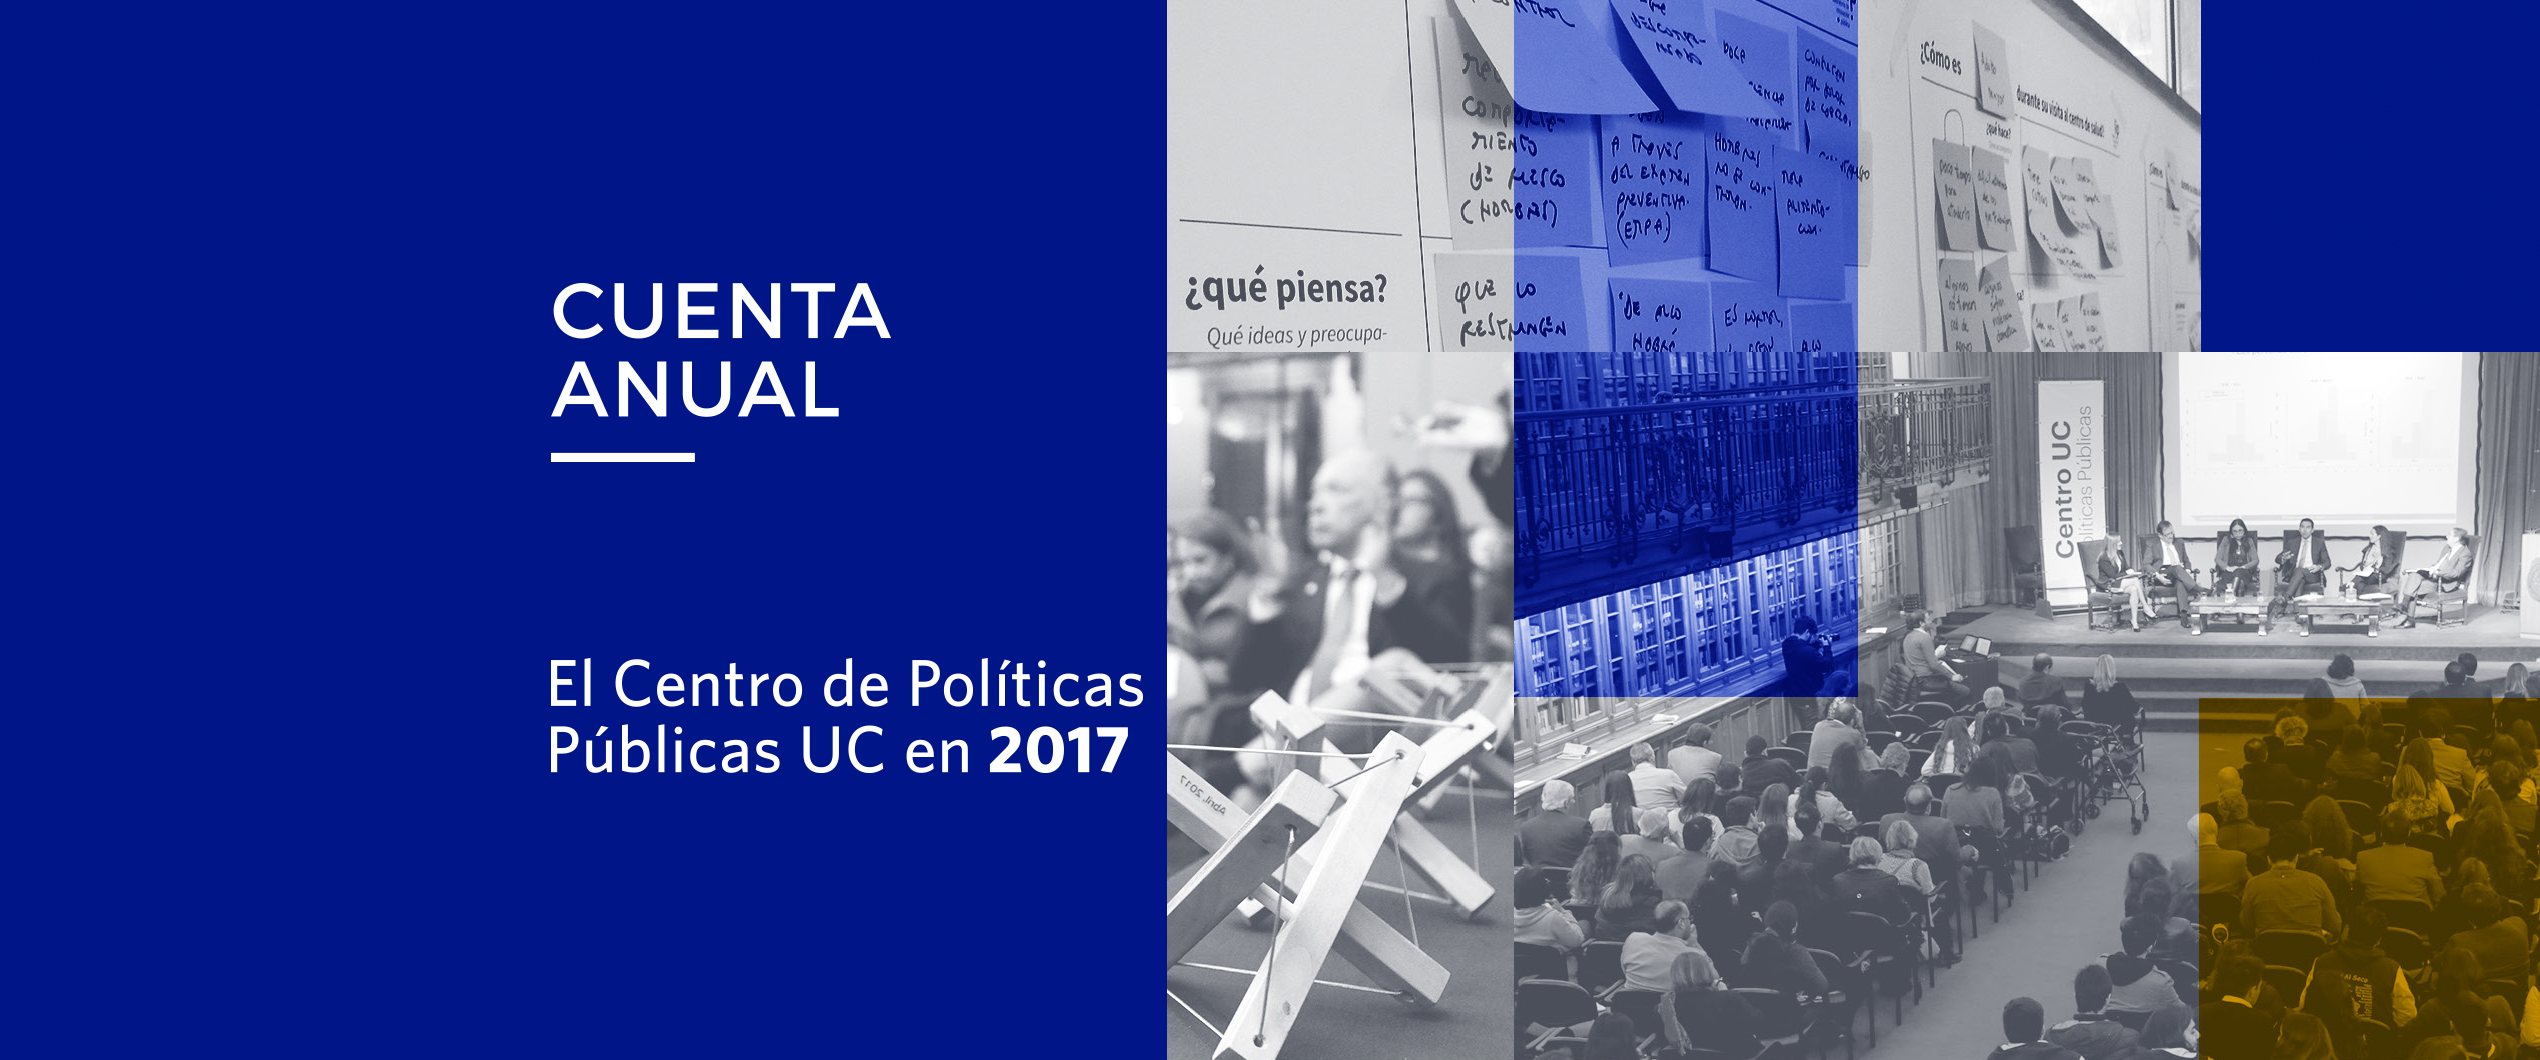 Imagen de CUENTA ANUAL 2017 – Centro de Políticas Públicas UC}